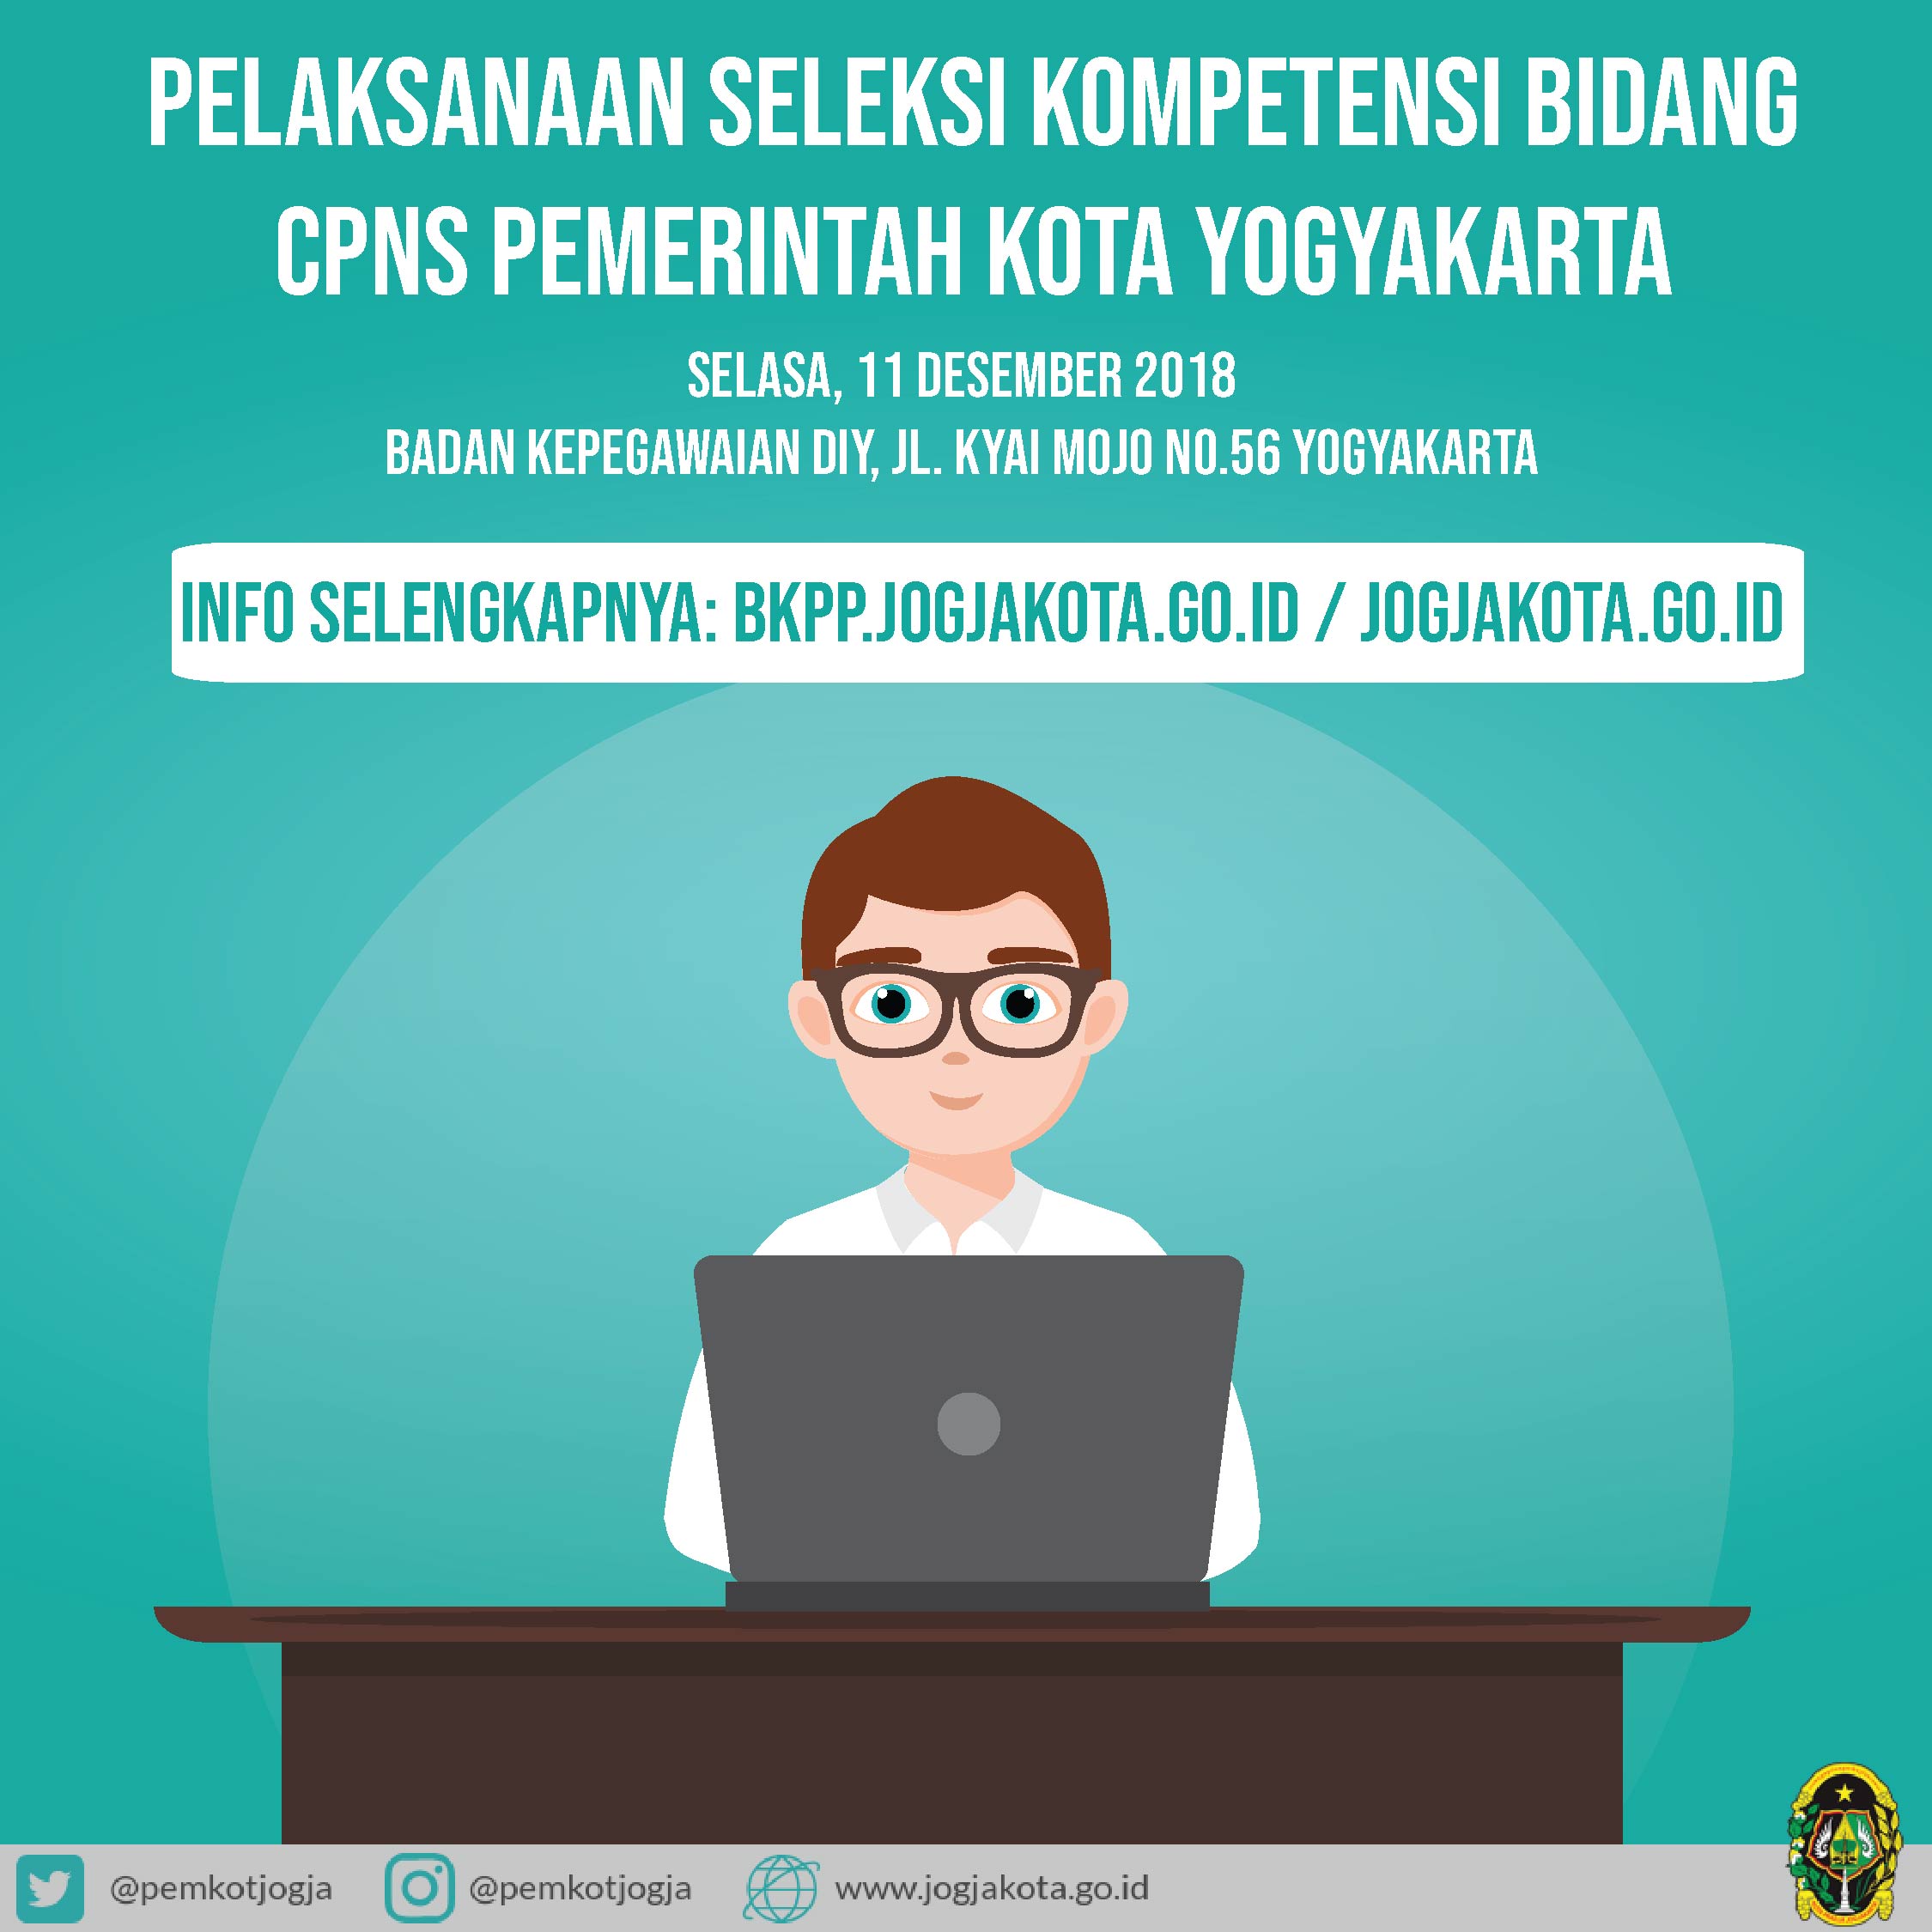 Jadwal Seleksi Kompetensi Bidang (SKB) CPNS Pemerintah Kota Yogyakarta 2018